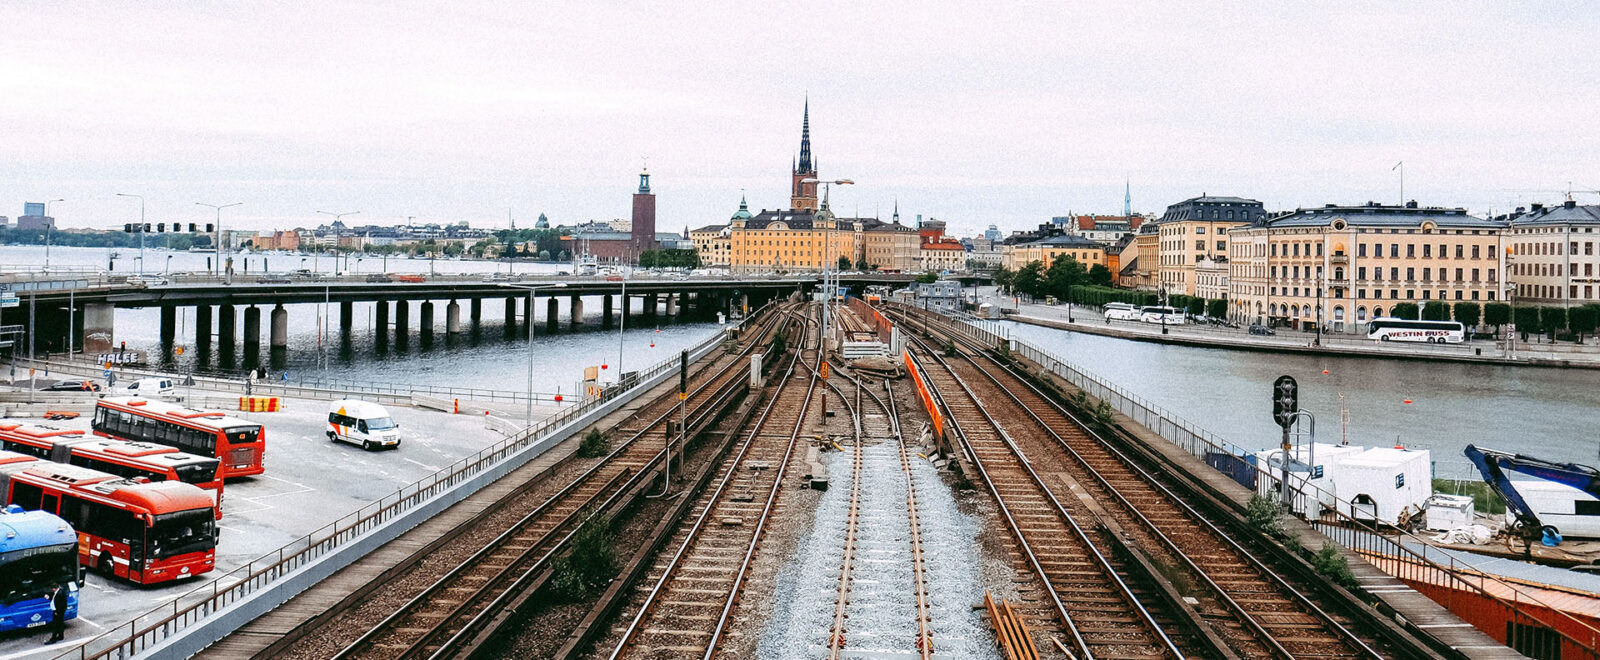 Railway bridge looking towards Stockholm, Sweden